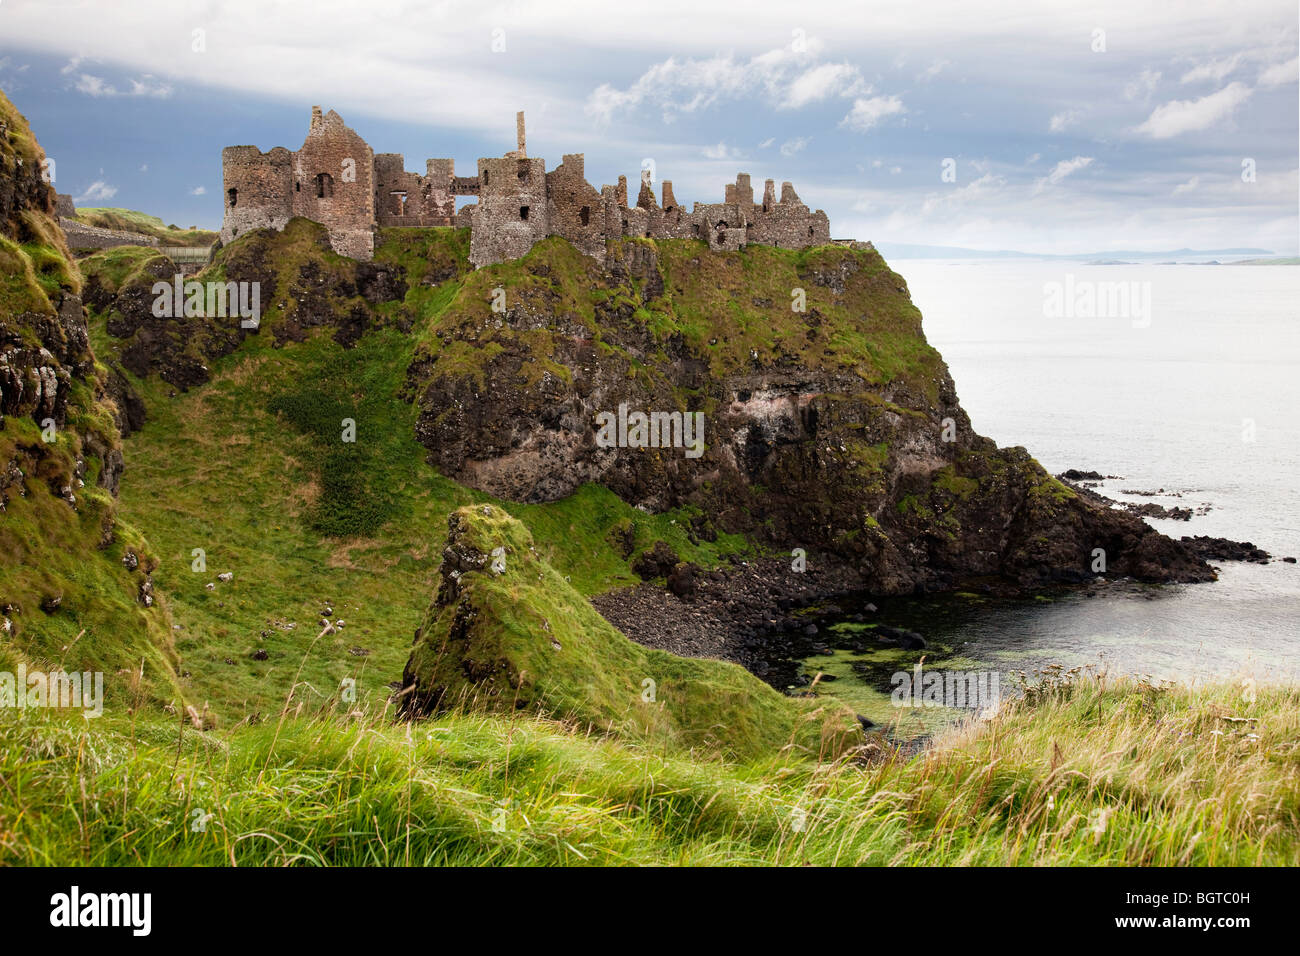 Castillo de Dunluce castillo irlandés medieval en Antrim. Irlanda del Norte Foto de stock